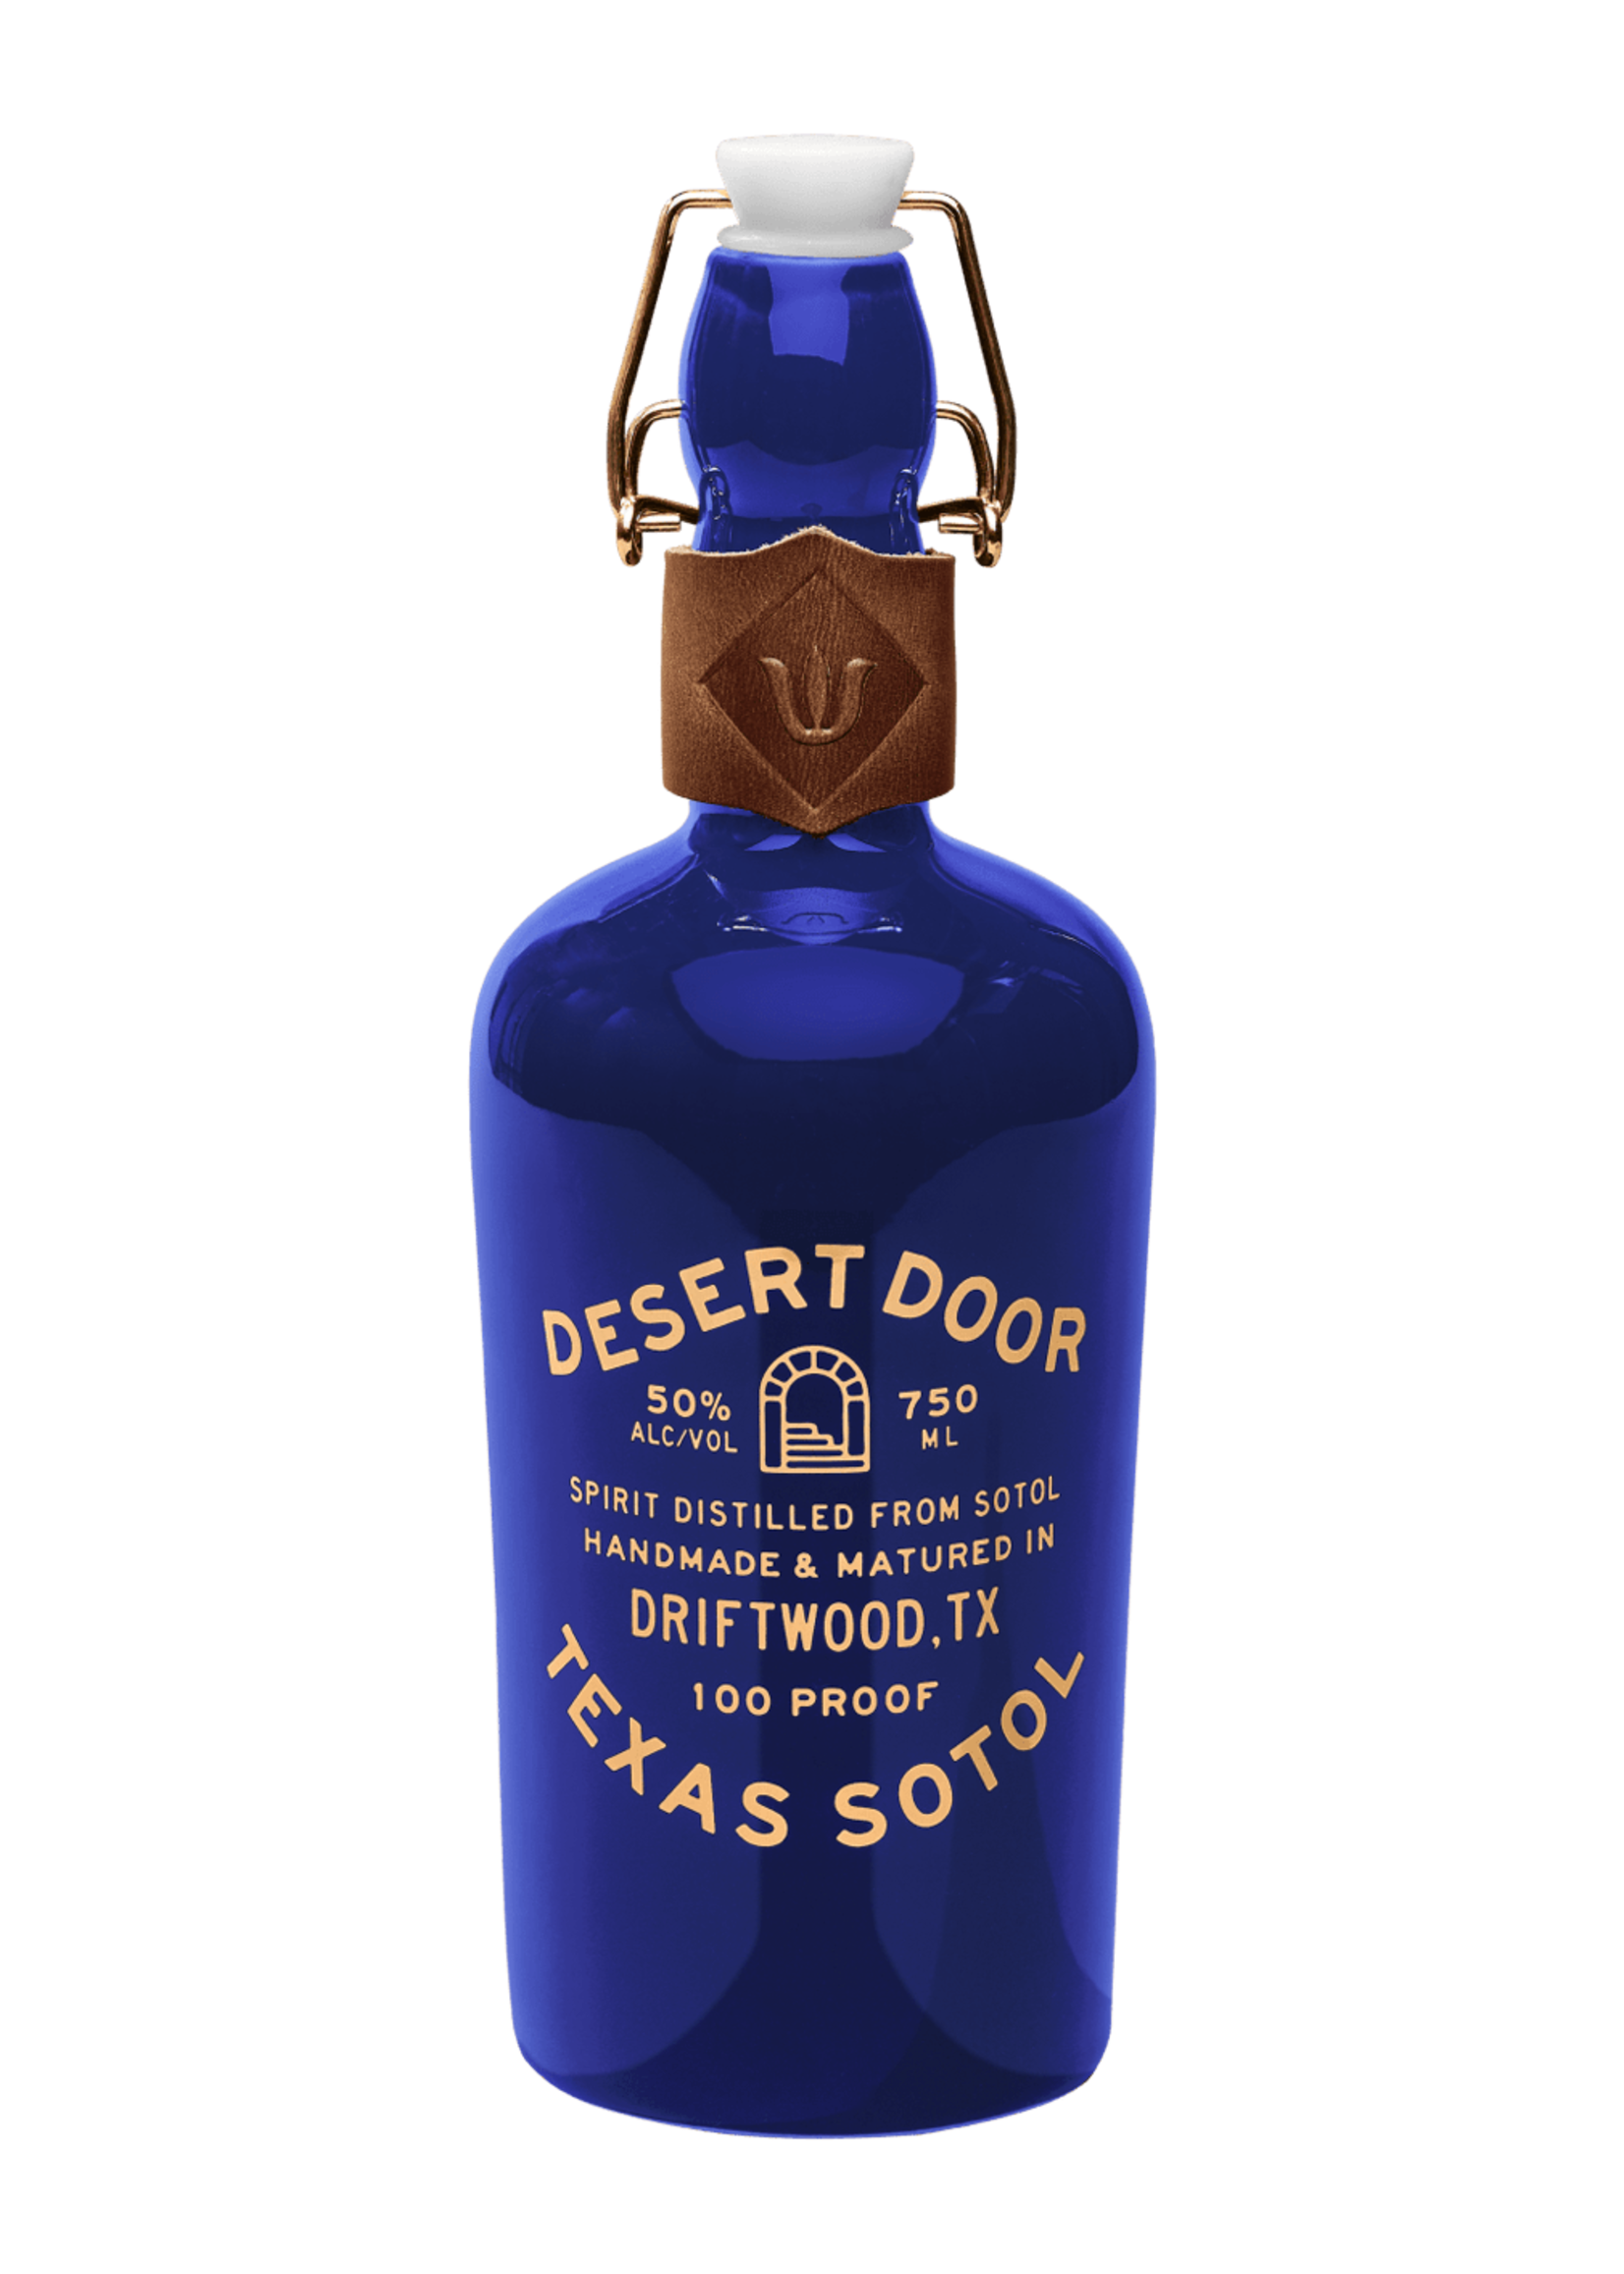 Desert Door Desert Door / Aged Texas Sotol 50% abv / 750mL